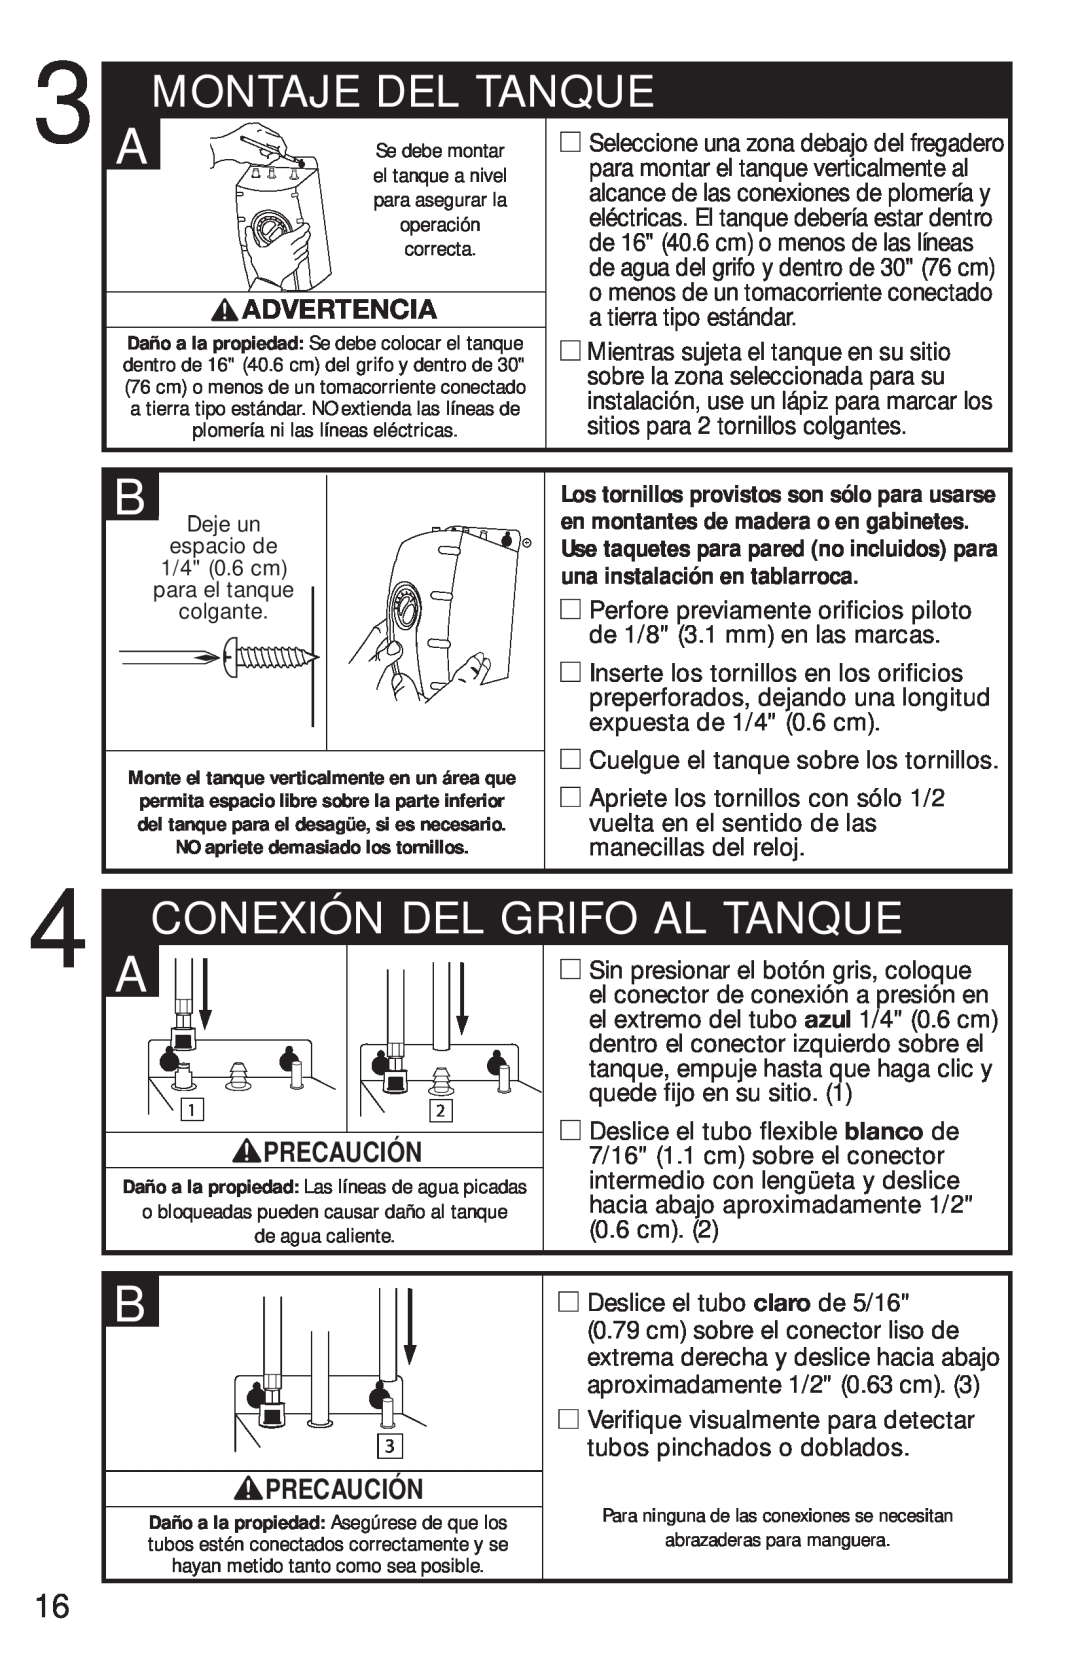 InSinkErator FAUCET owner manual Montaje Del Tanque, Conexión Del Grifo Al Tanque, Advertencia, Precaución 